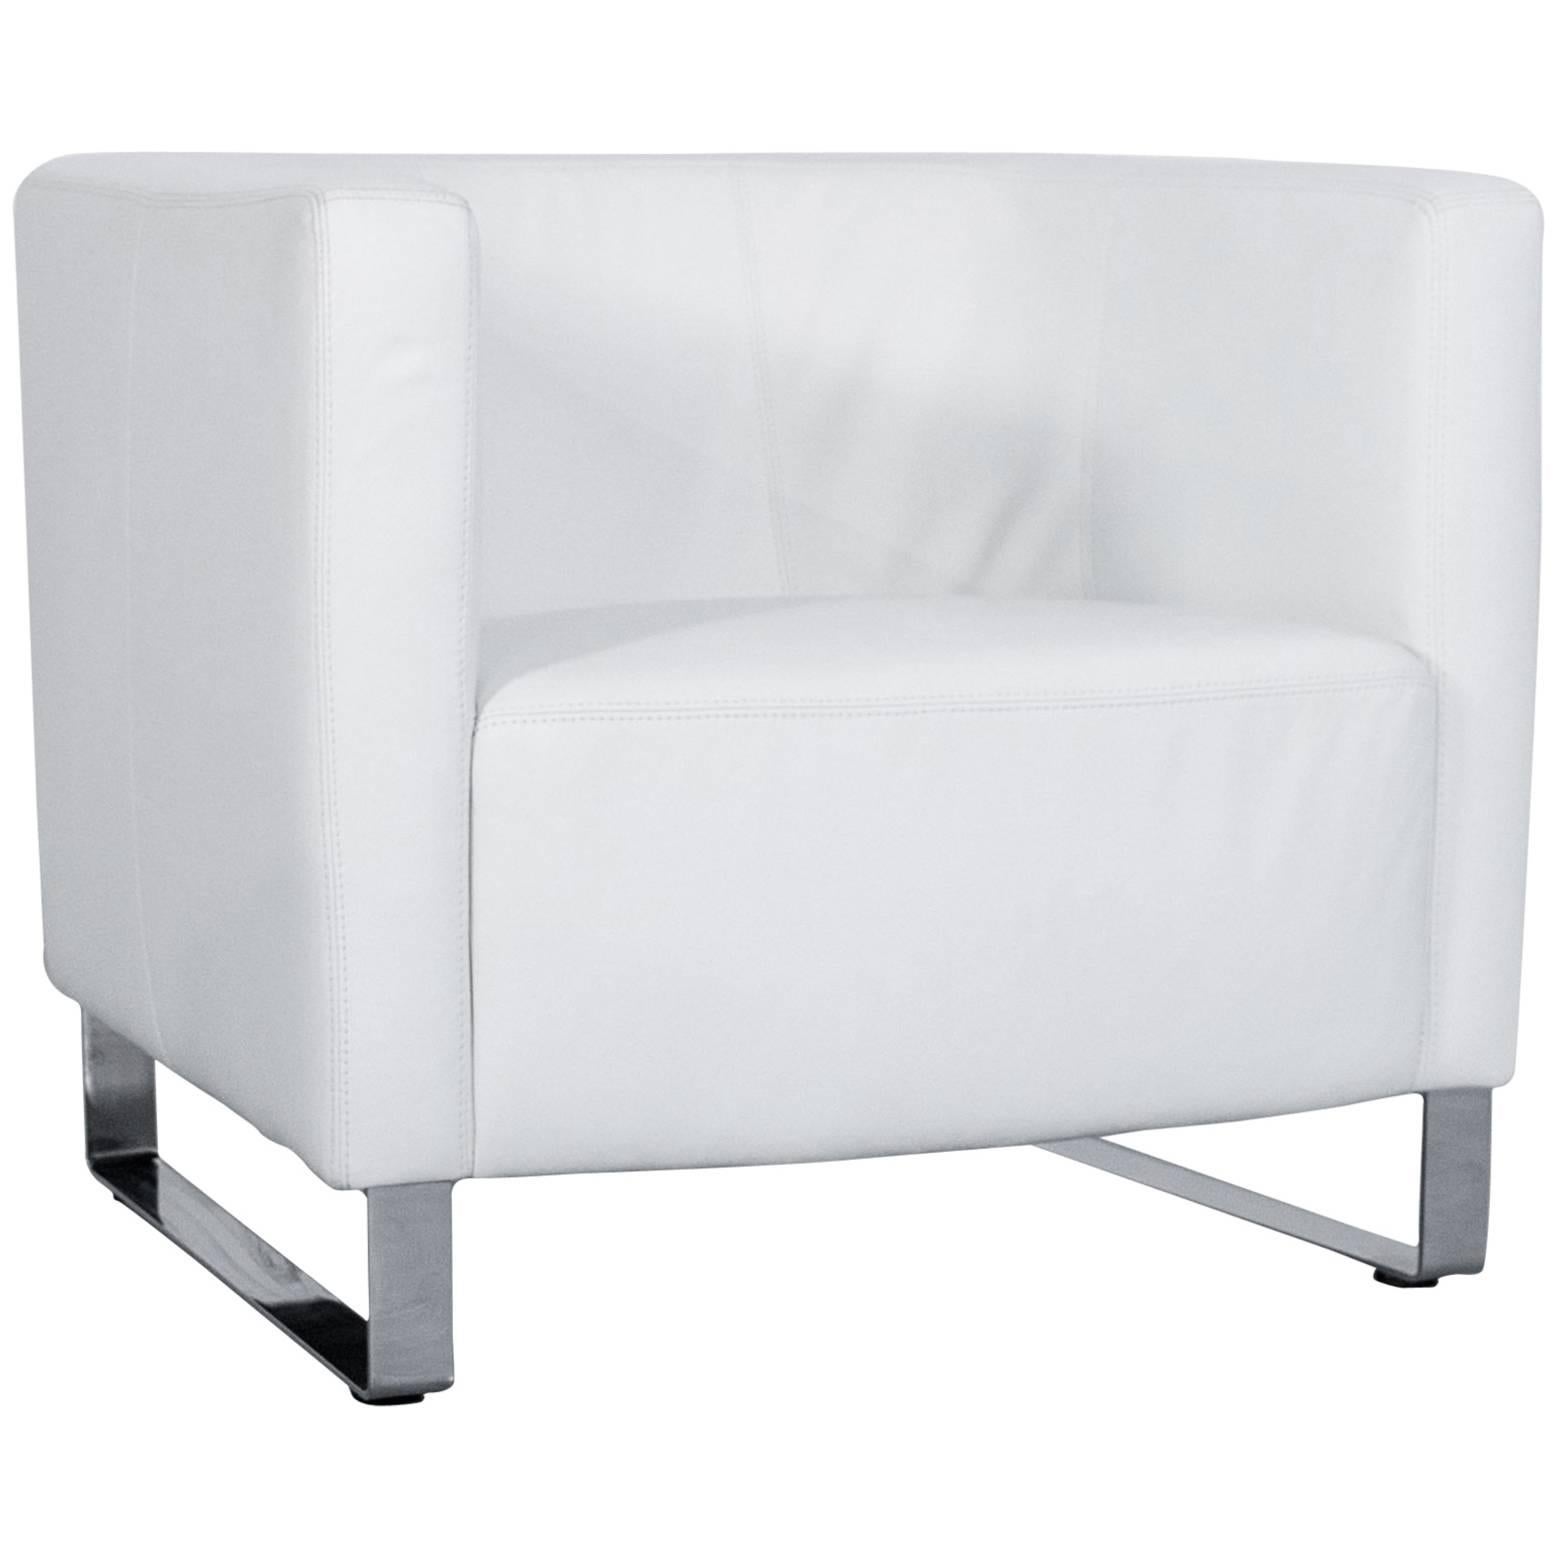 Willi Schillig Havana Designer Leather Armchair White One Seat Couch Modern